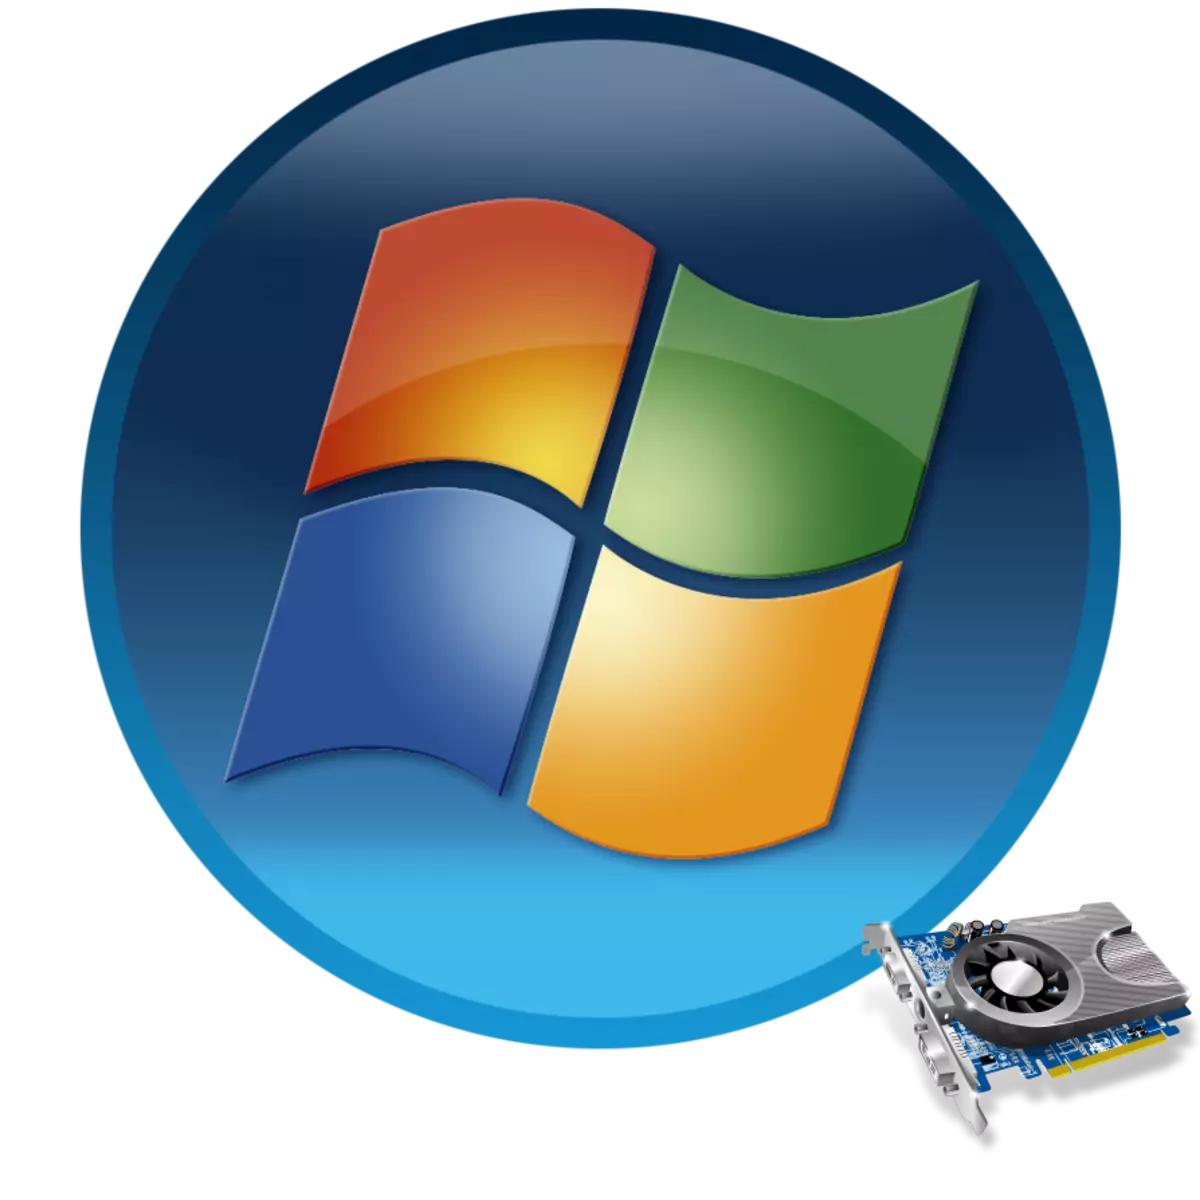 Windows 7-de wideo kartoçkalaryny täzelemek